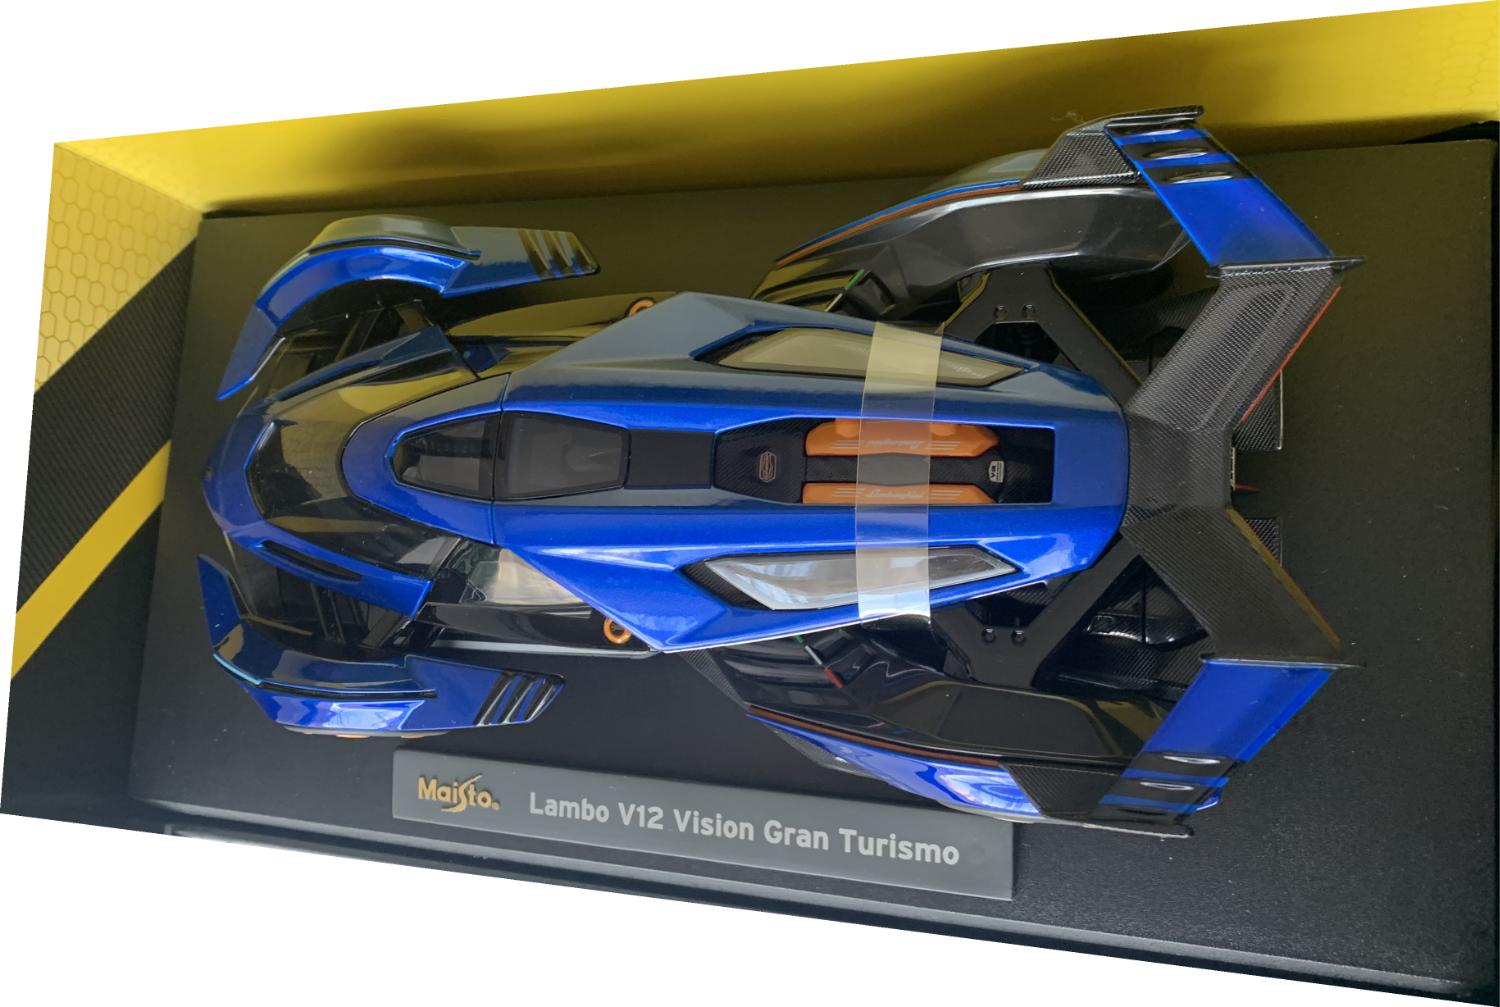 Lamborghini V12 Vision Gran Turismo 2021 in blue / black 1:18 scale model from Maisto